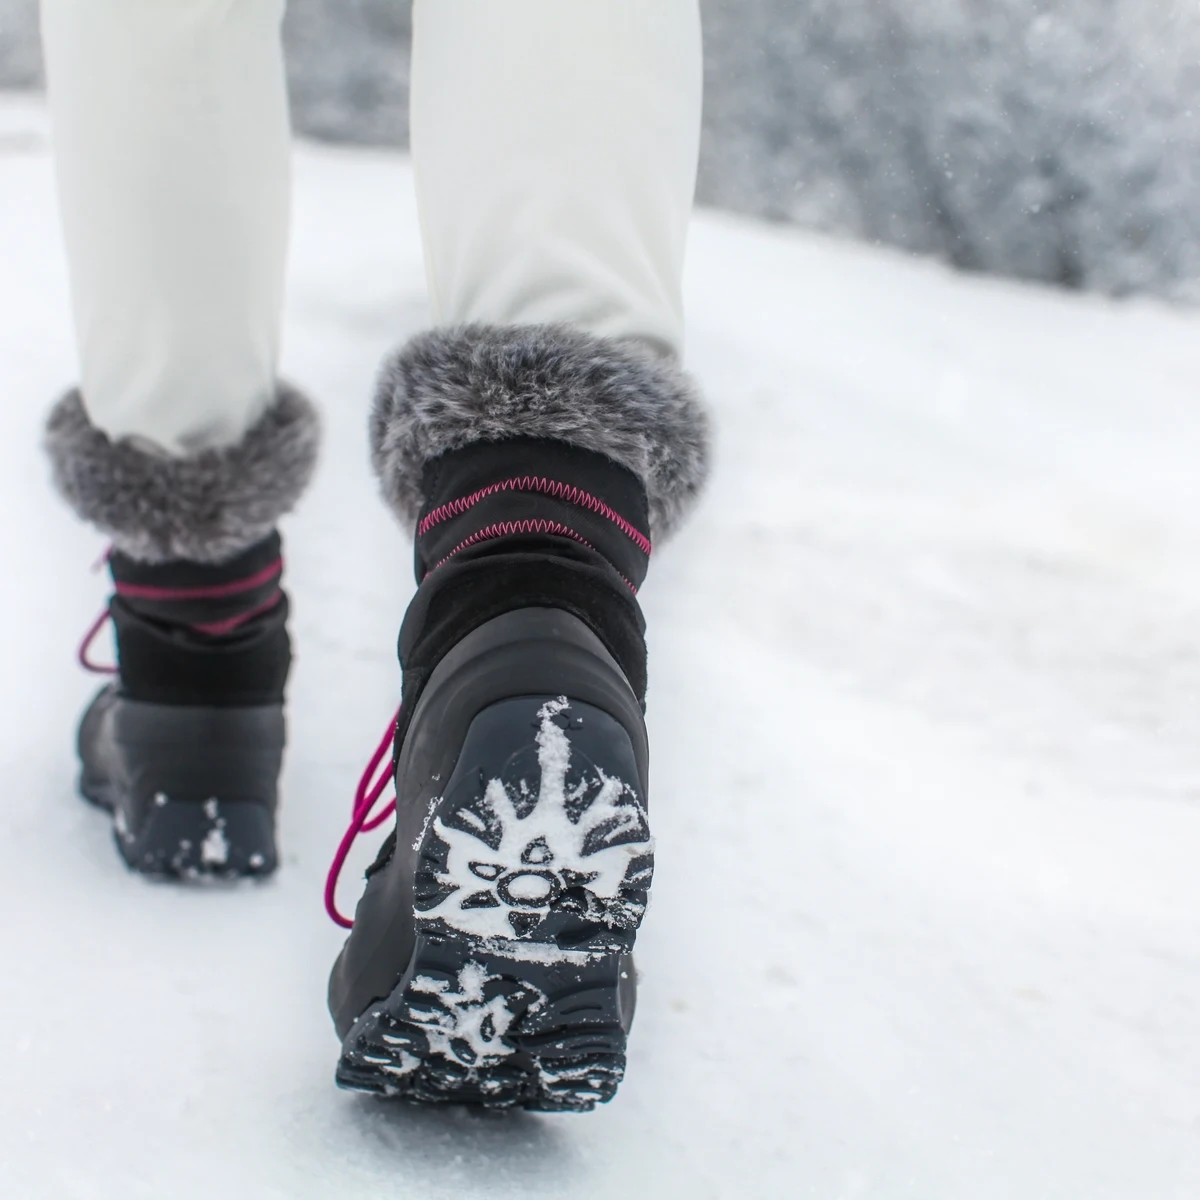 Es malo llevar botas nieve (descansos) diario?